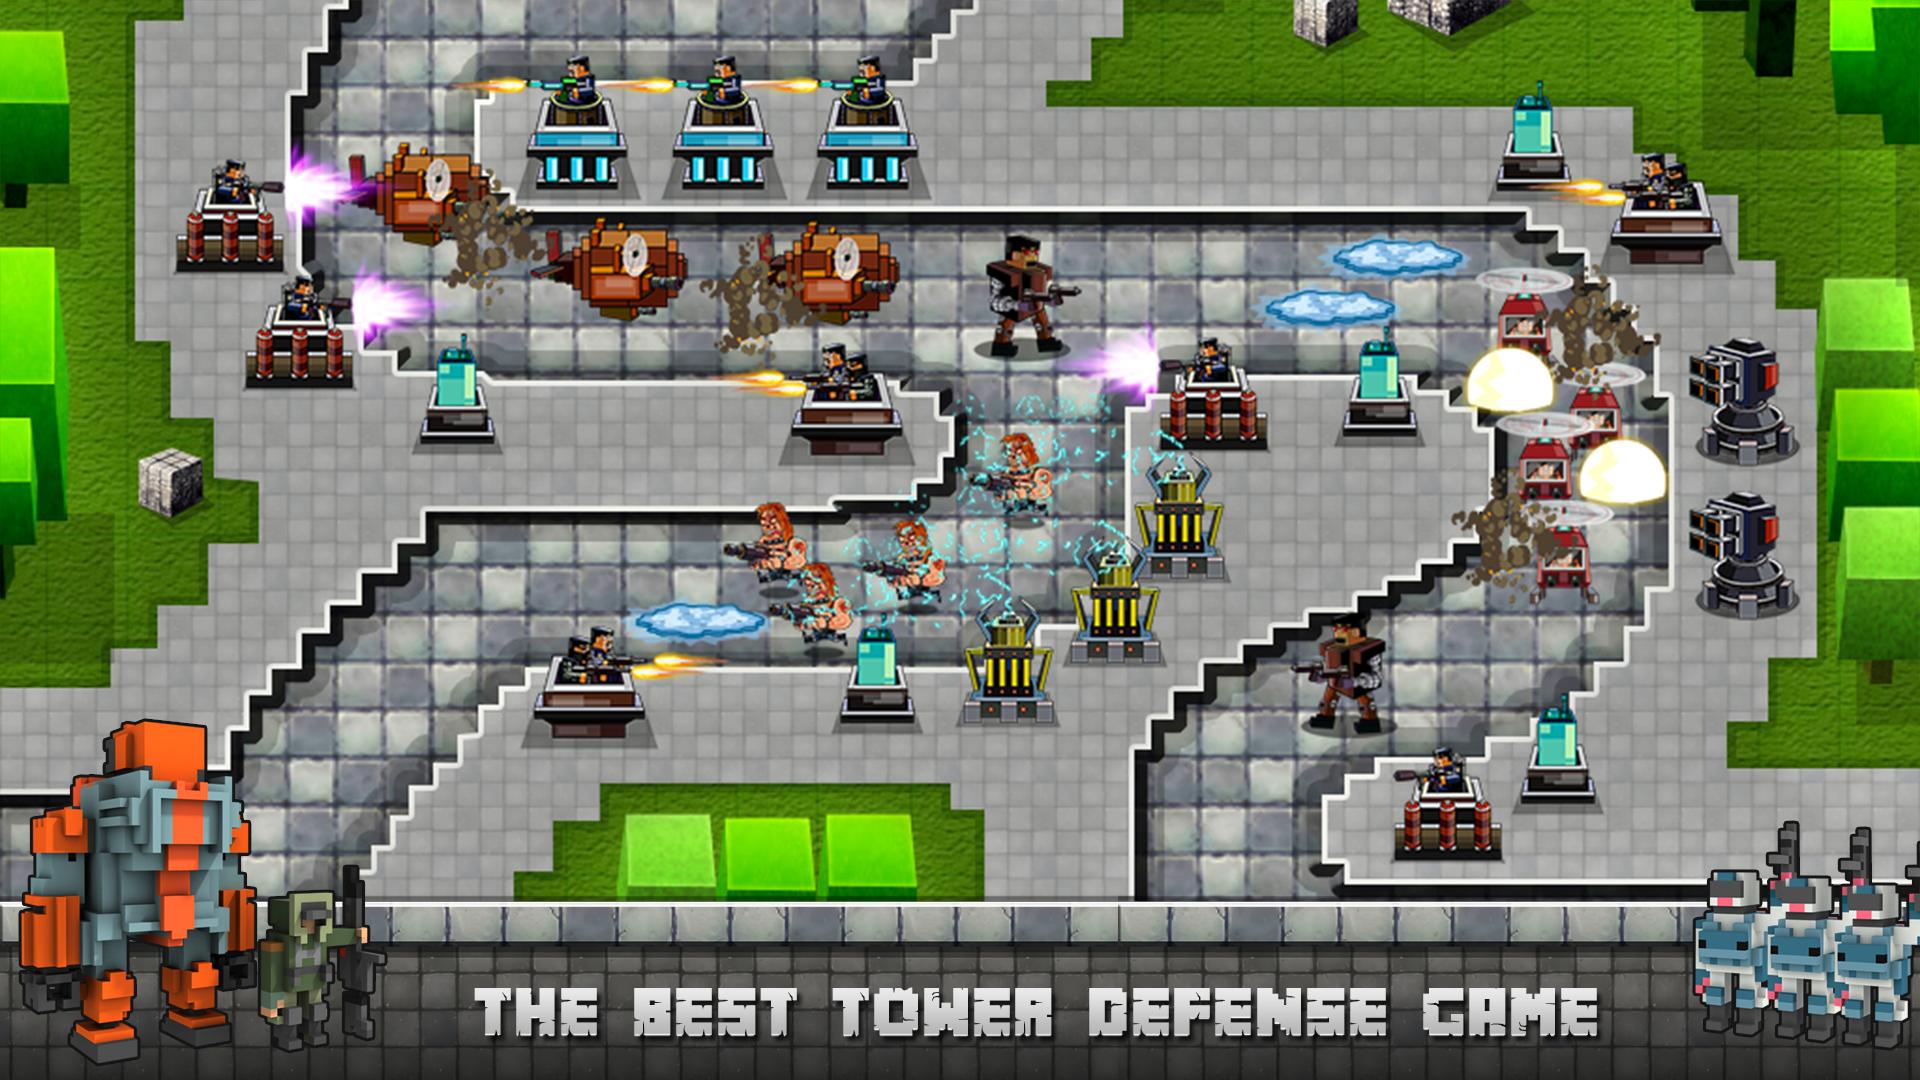 Tower defense майнкрафт карта. ТОВЕР дефенс майнкрафт. Игра майнкрафт защита башни. Башня для обороны в майнкрафт. Игра майнкрафт защита башни 3.